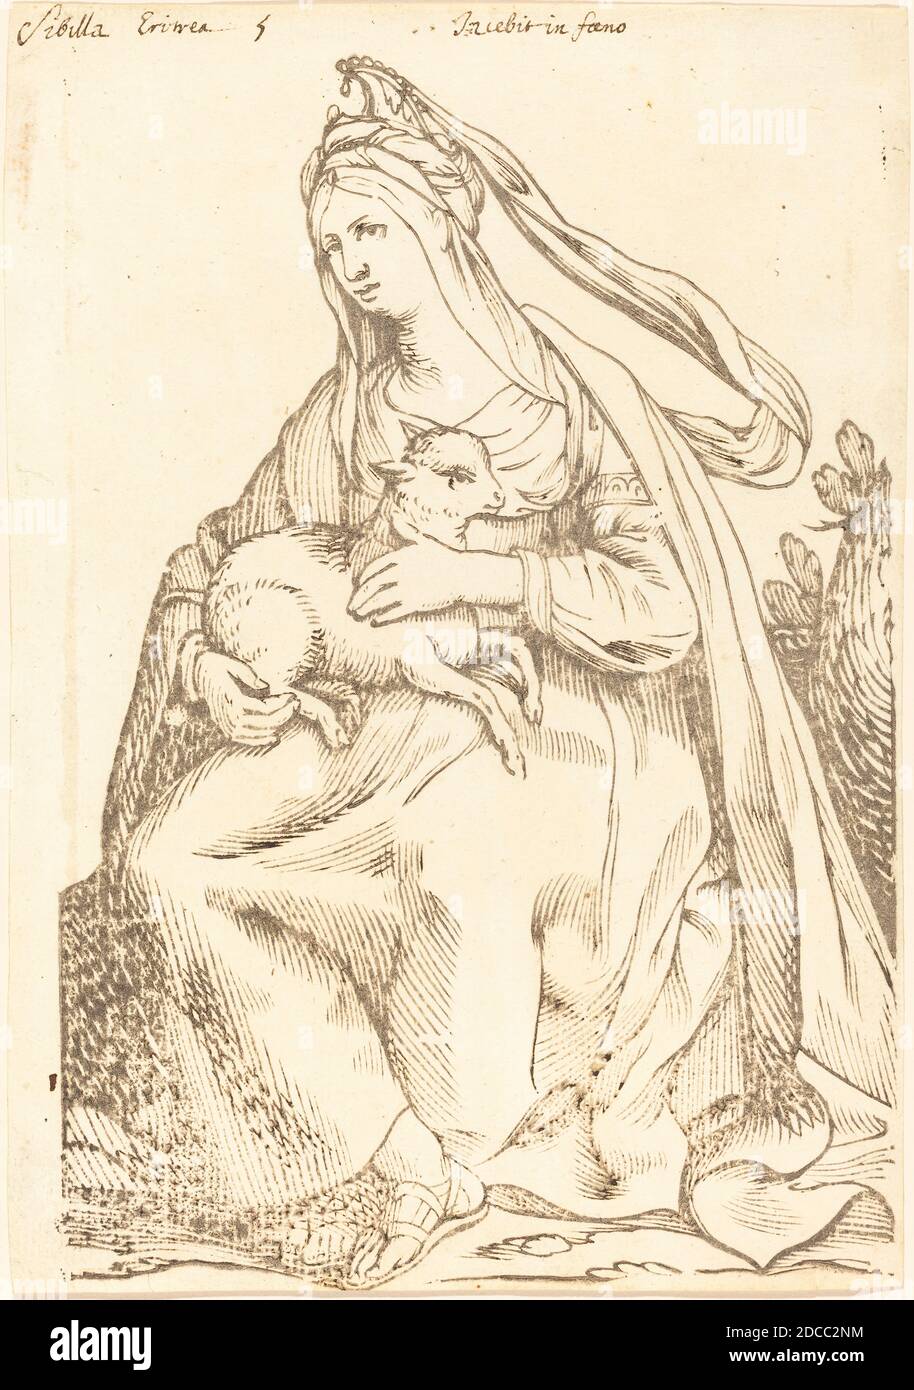 Jacques Stella, (artiste), français, 1596 - 1657, Sibylla erythraea, série de Sibyls, (série), 1625, coupe de bois Banque D'Images